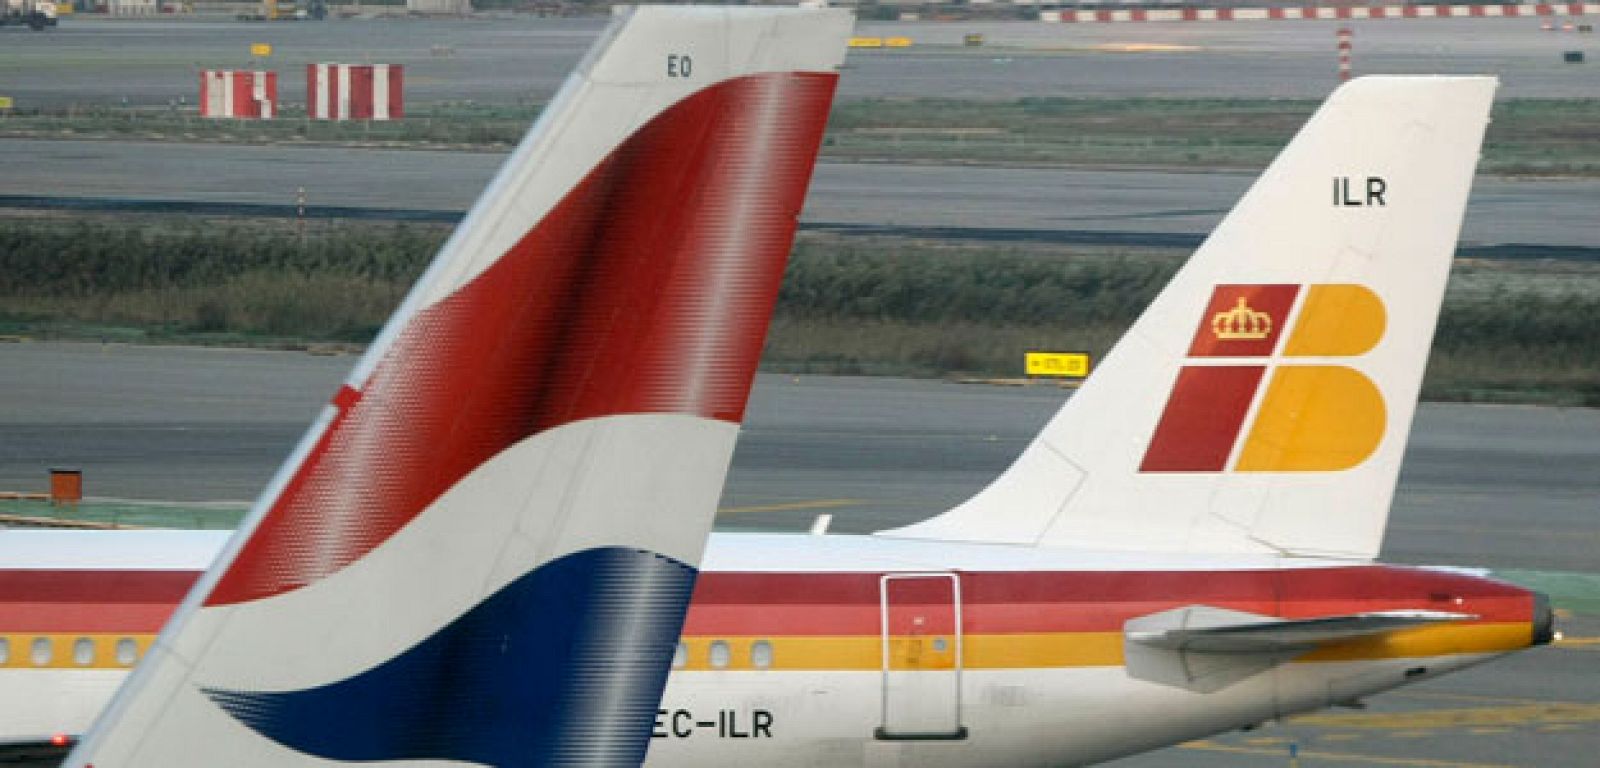 Enseñas de British Airways e Iberia en las colas de dos de sus aviones